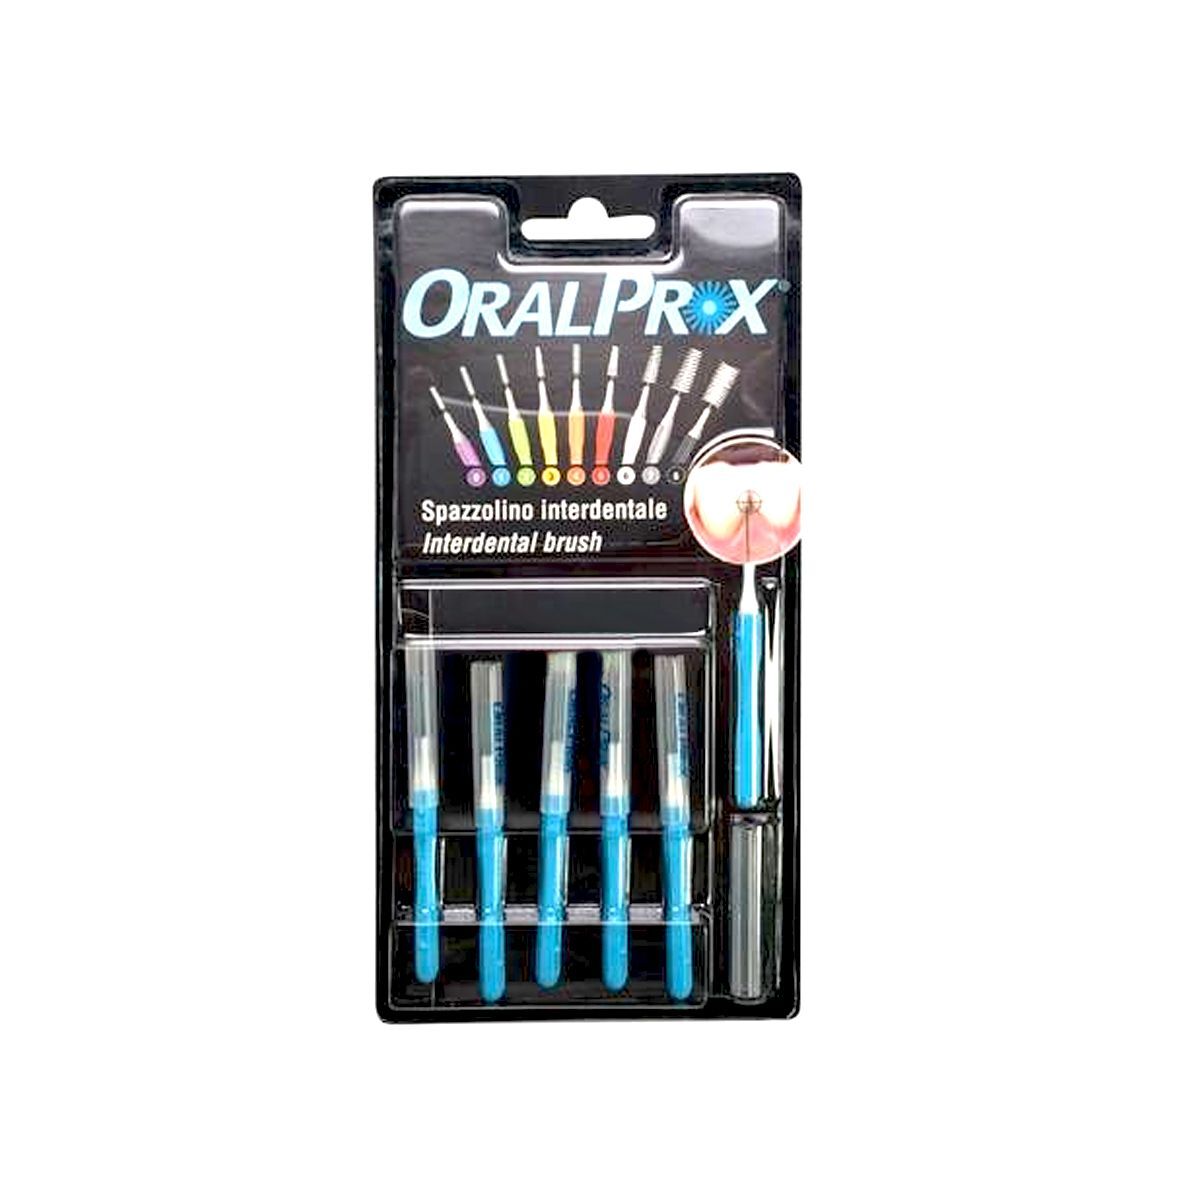 oralprox spazzolini interdentali misura 1 azzurro 6 pezzi